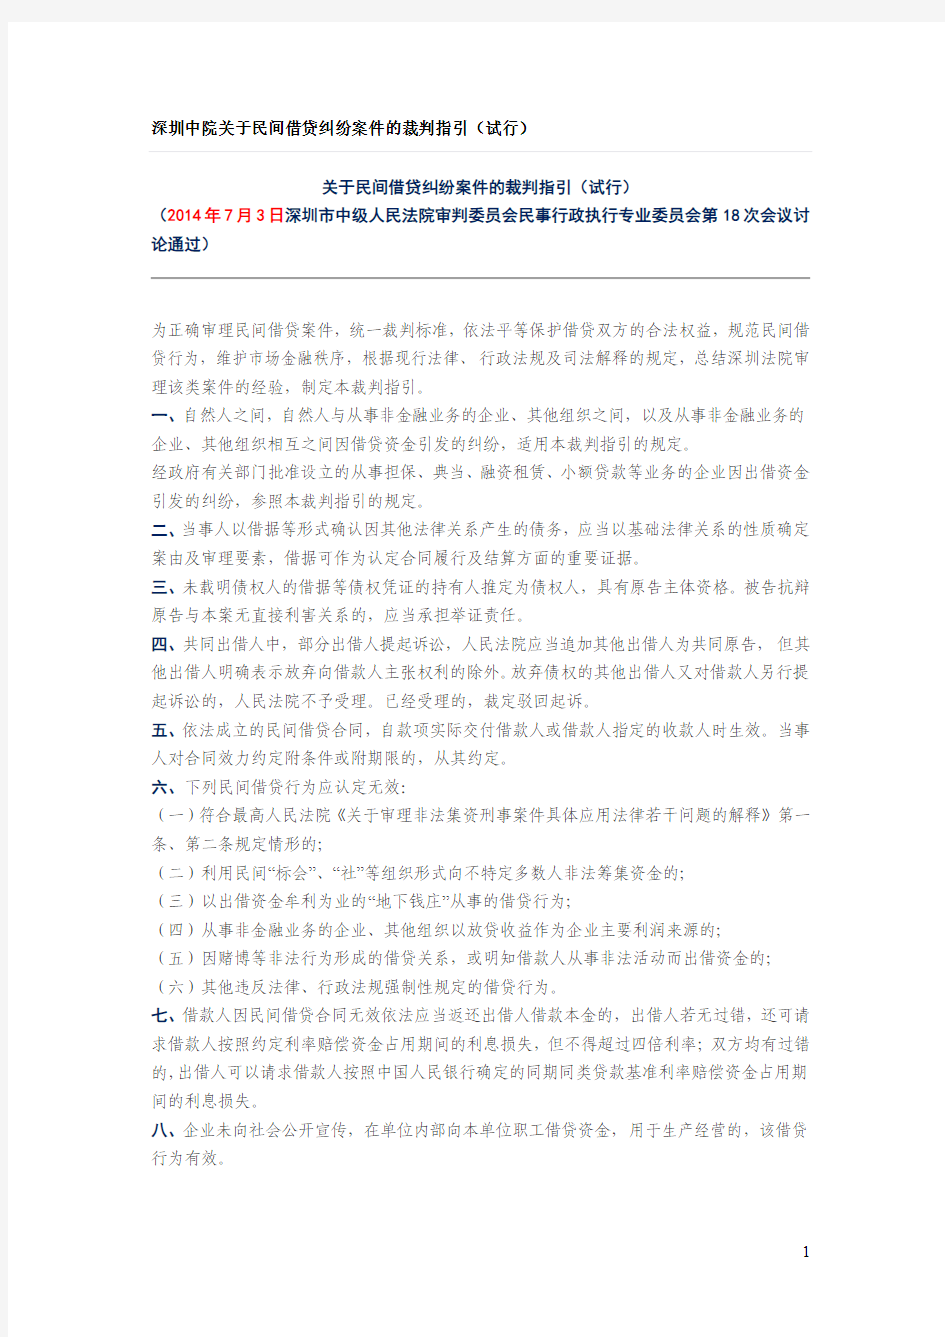 深圳中院关于民间借贷纠纷案件的裁判指引